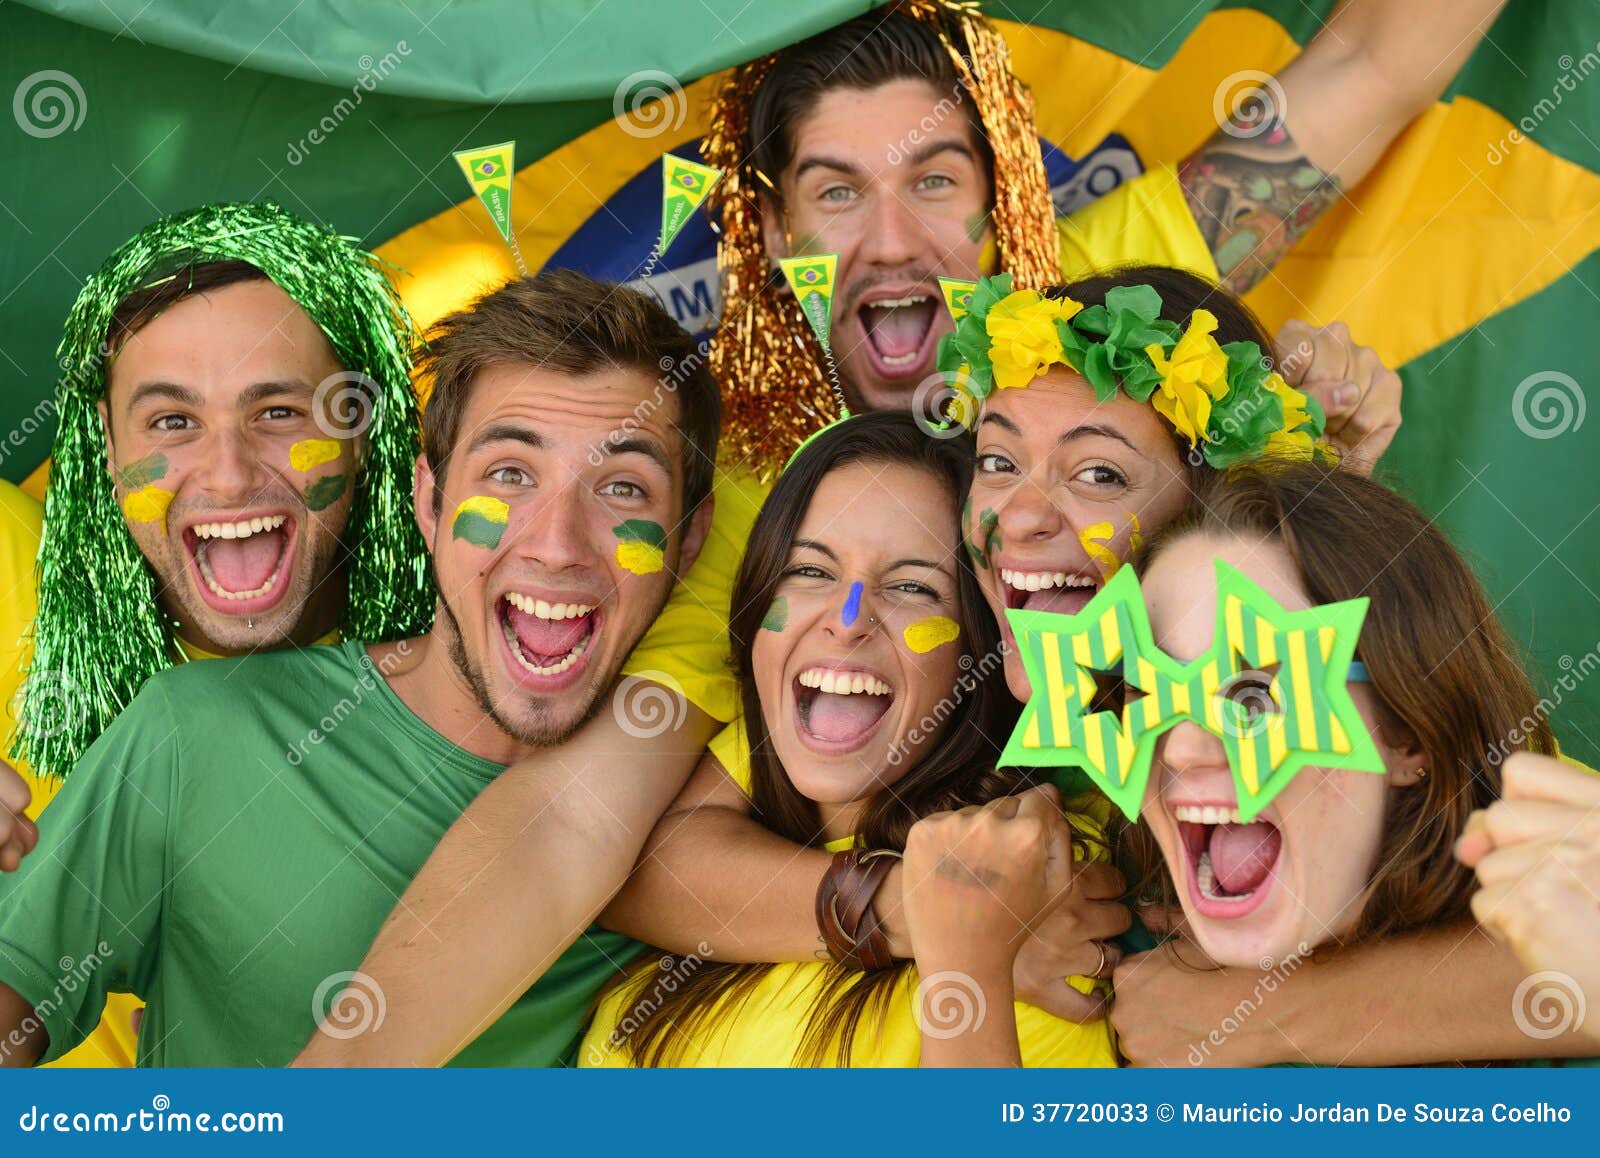 brazilian sport soccer fans celebrating victory together.